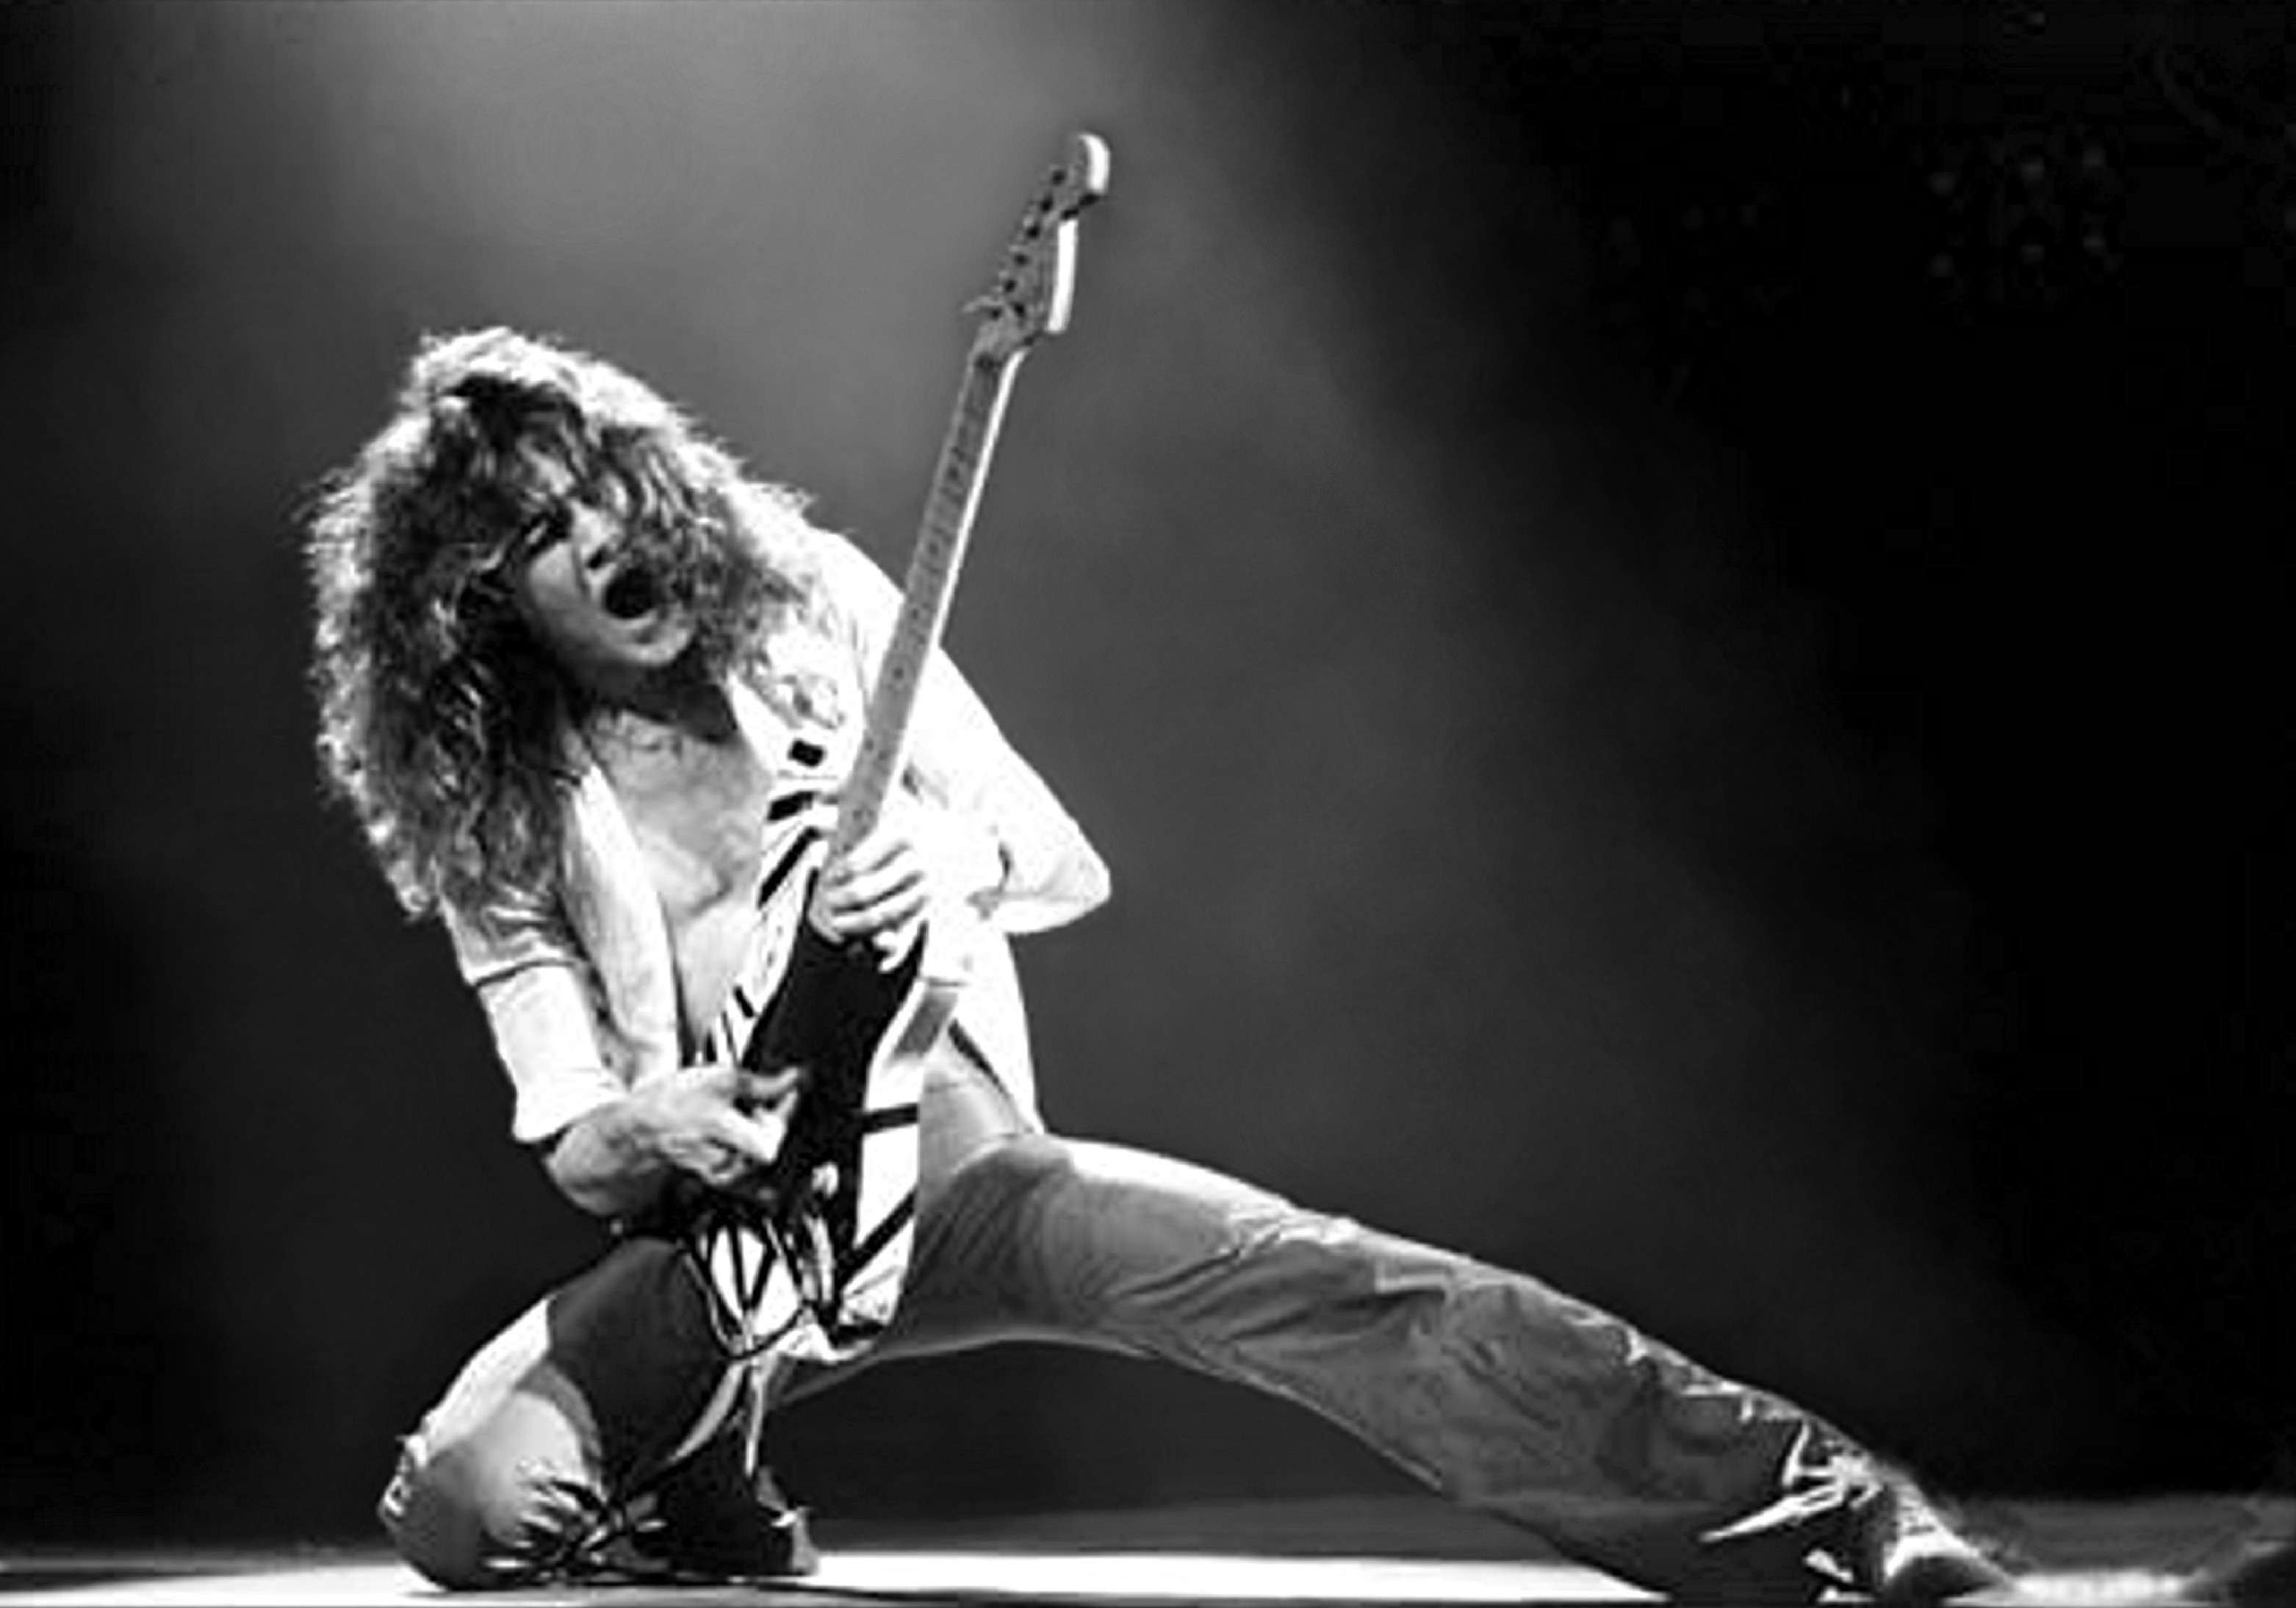 Images of Van Halen | 3125x2188